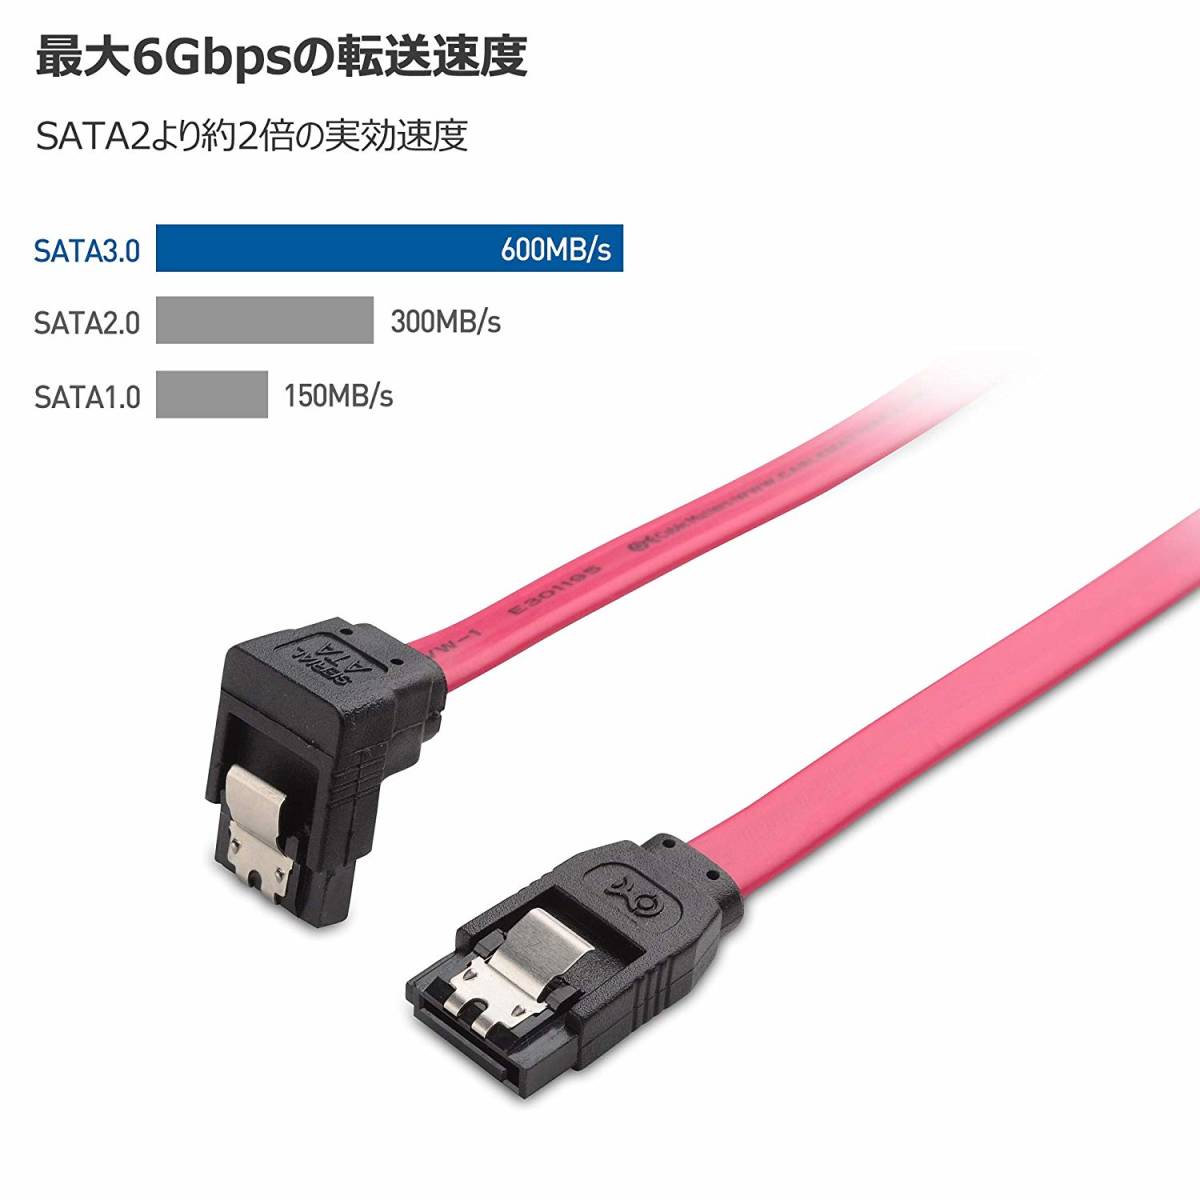 3本セット SATA ケーブル L型 Sata3 シリアル ATA3.0 ケーブル 6 Gbps対応 SSDとHDD増設 45CM_画像6